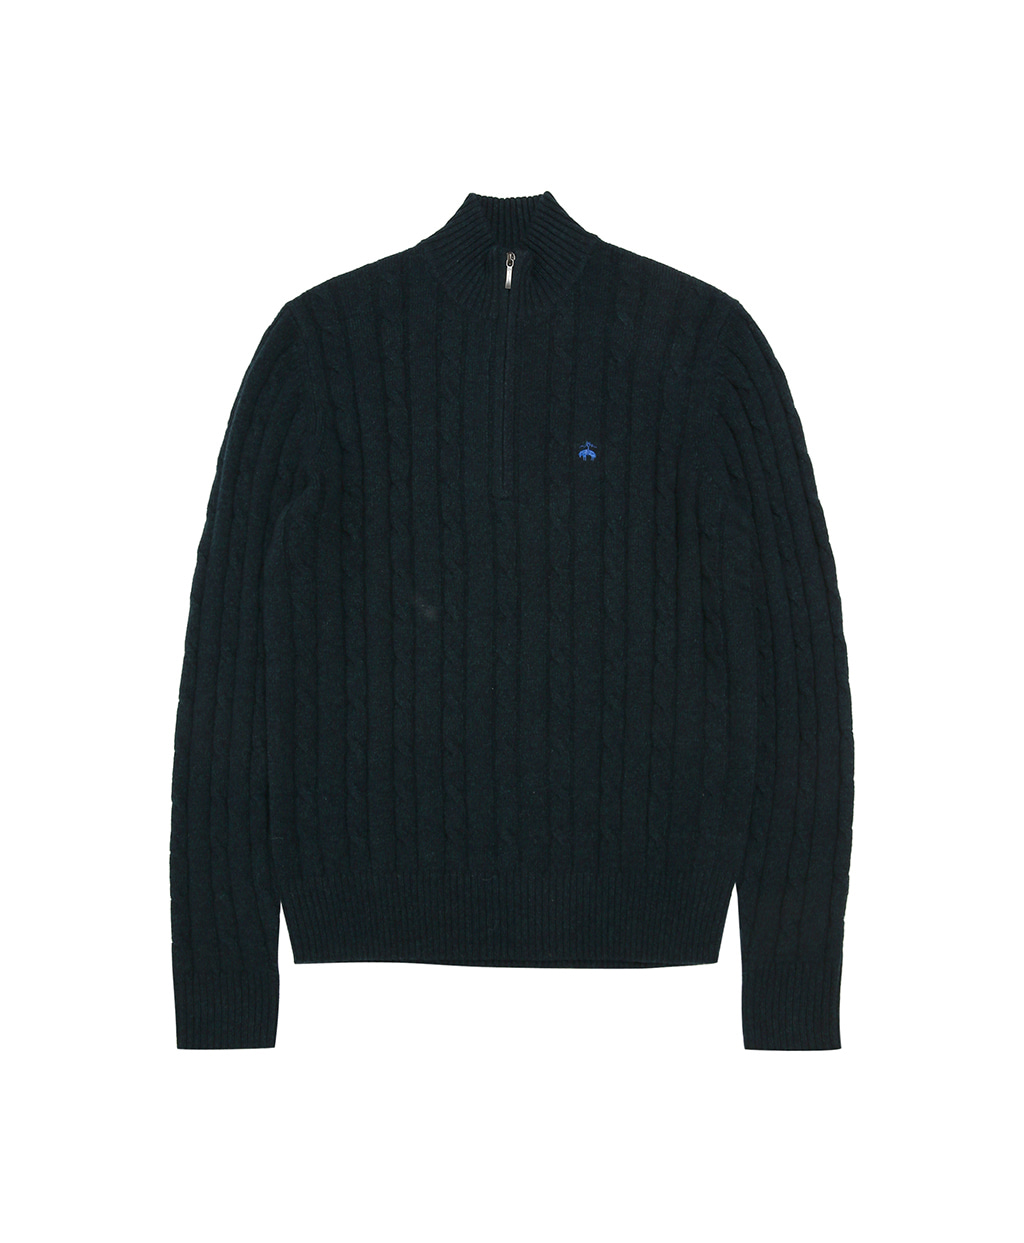 로고 케이블 하프 집업 스웨터 (다크그린)